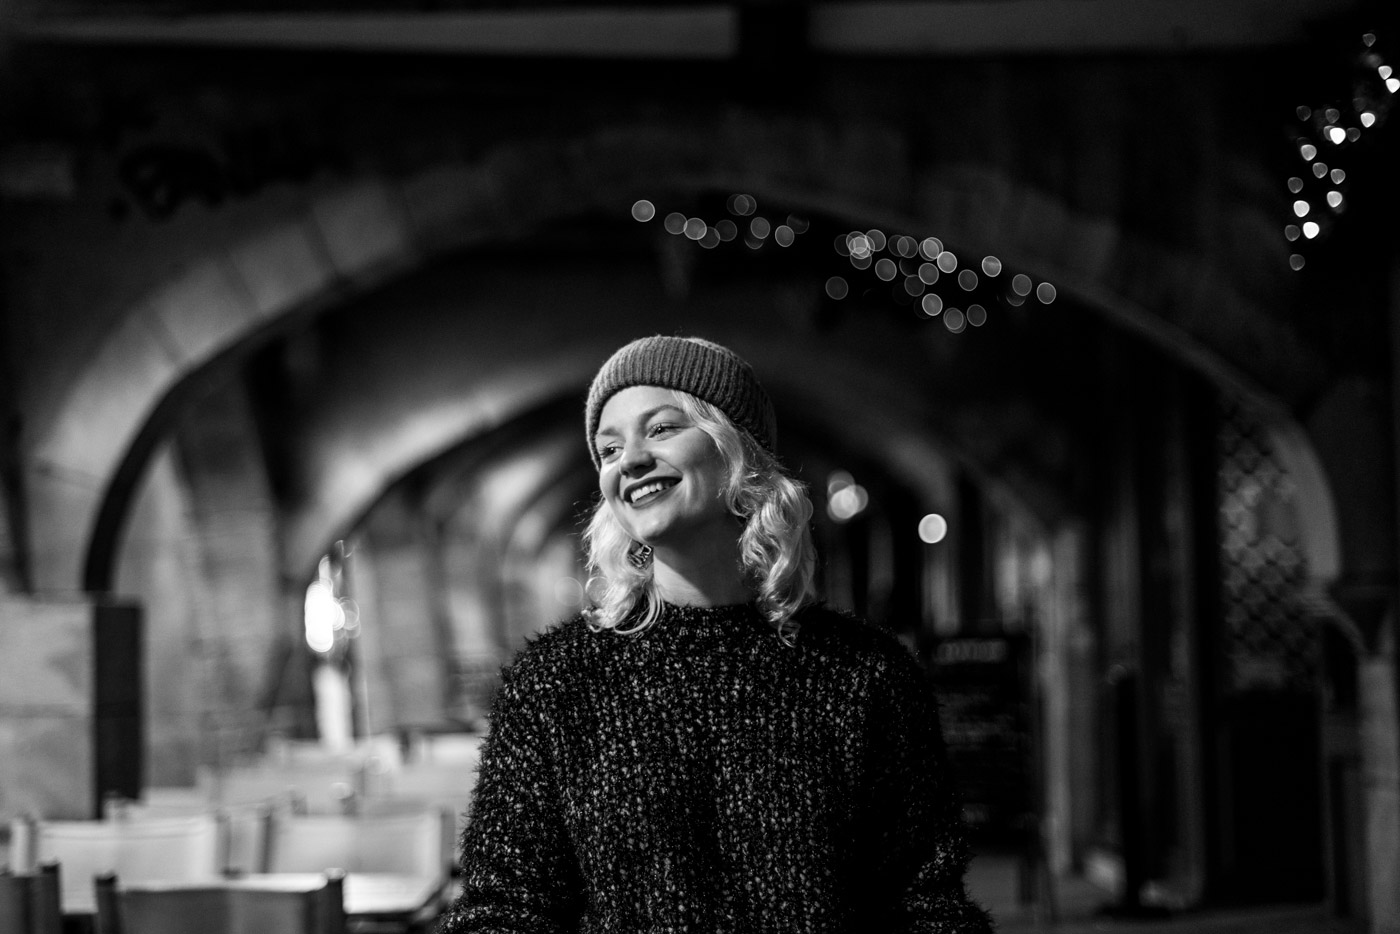 Margaux Gatti Photographe de Metz - La Femme dans la Ville de Metz - Projet Photo Portrait 2019 - Arcades Place St Louis